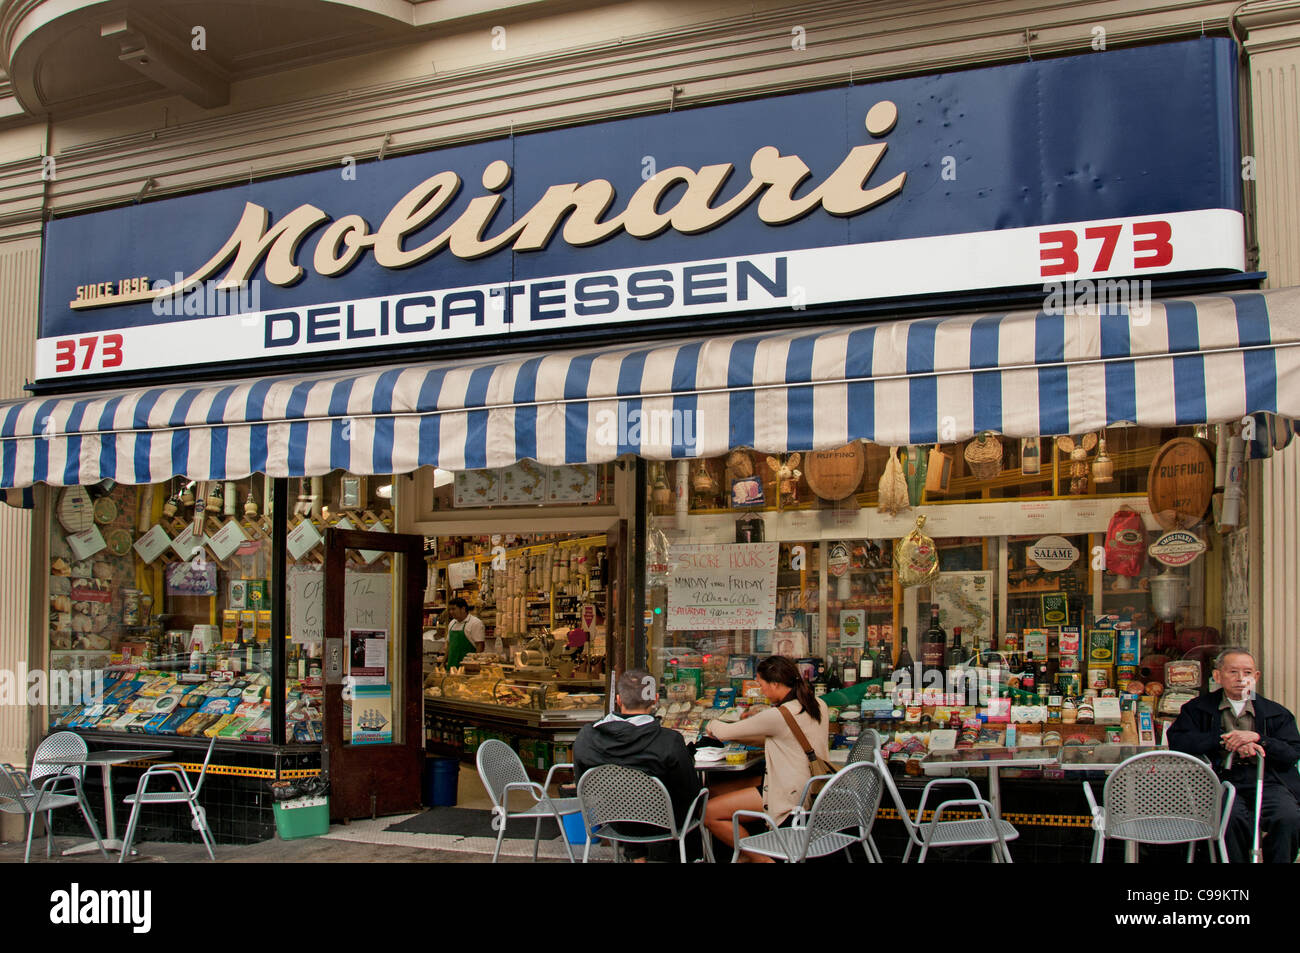 Molinari Deli Delicatessen Little Italy San Francisco California United States of America American USA Town City Stock Photo